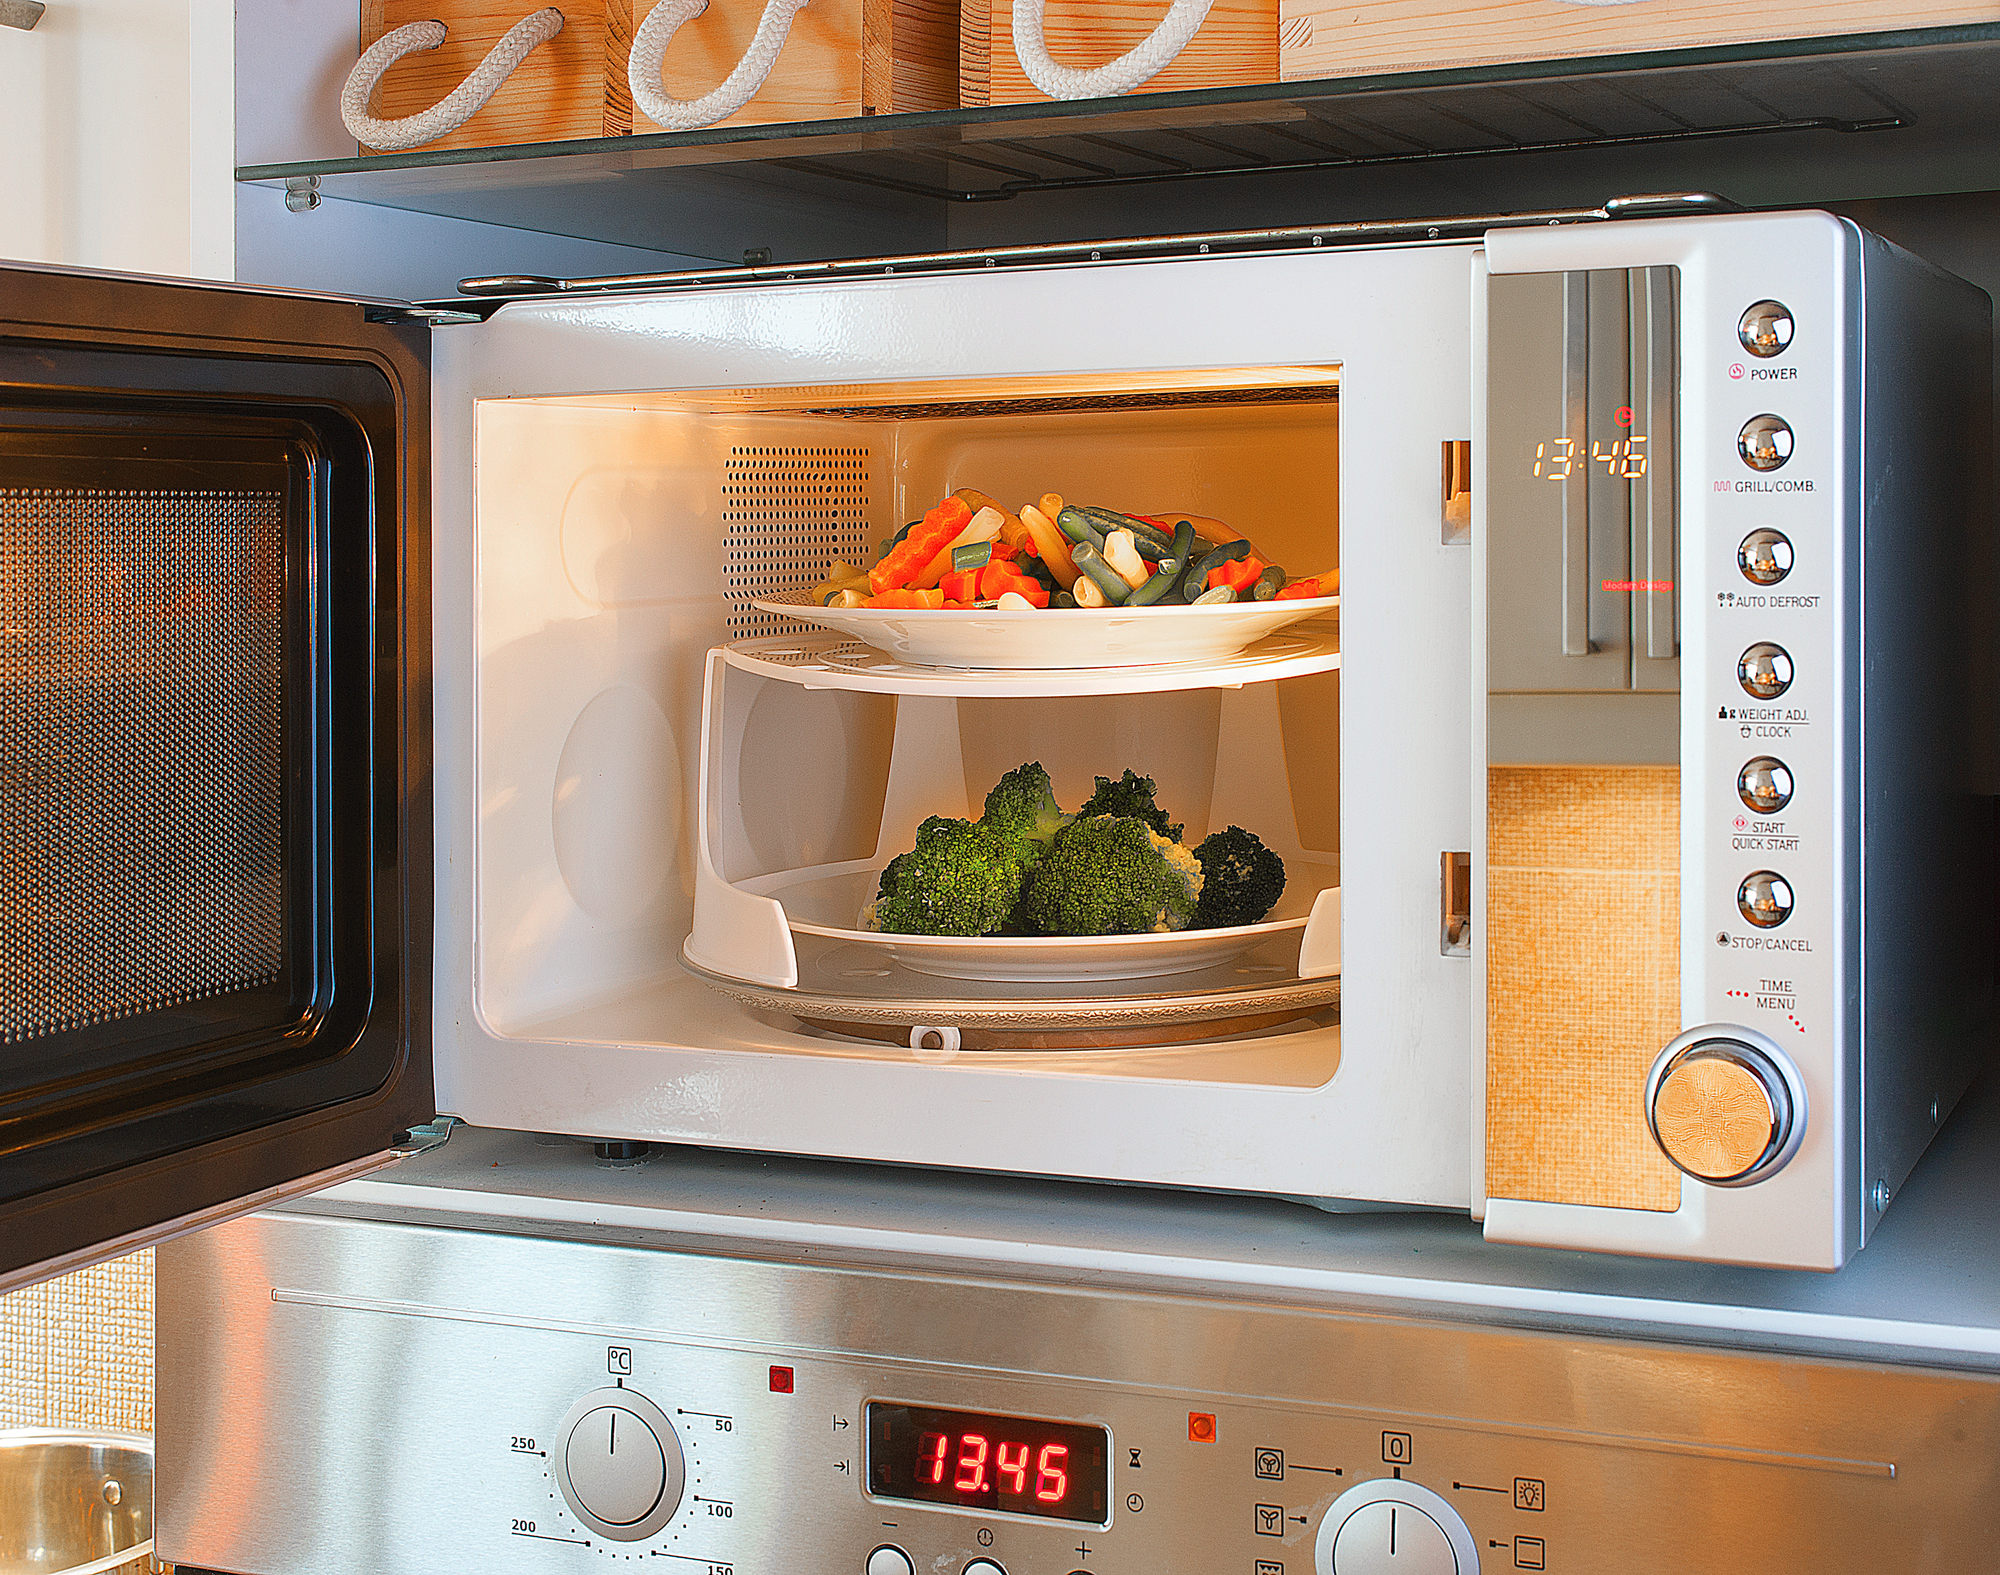  Безопасна ли микроволновая печь и как пользоваться ею правильно 